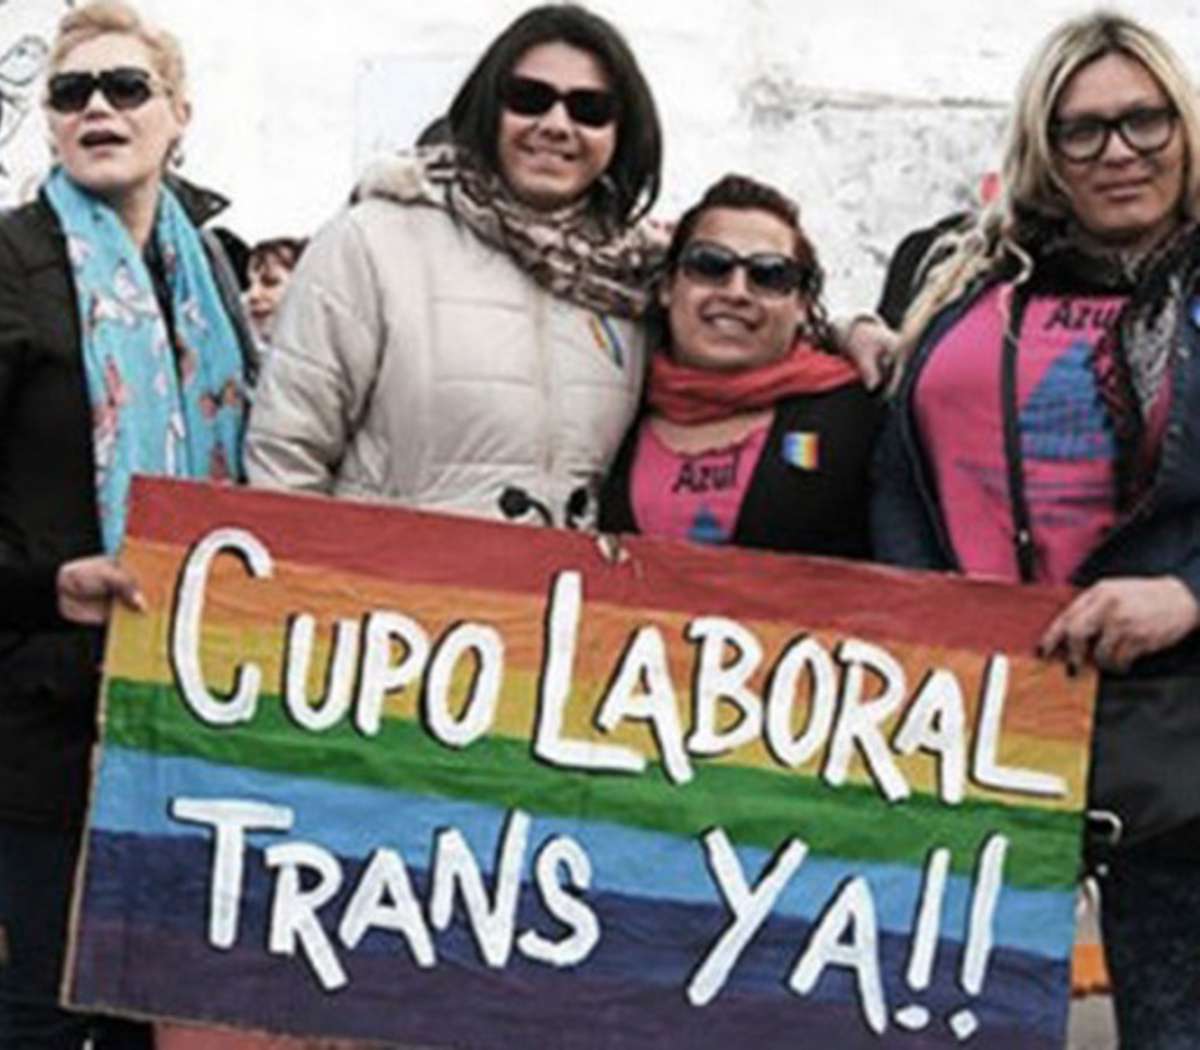  Concepción del Uruguay: Aprobaron el cupo laboral trans